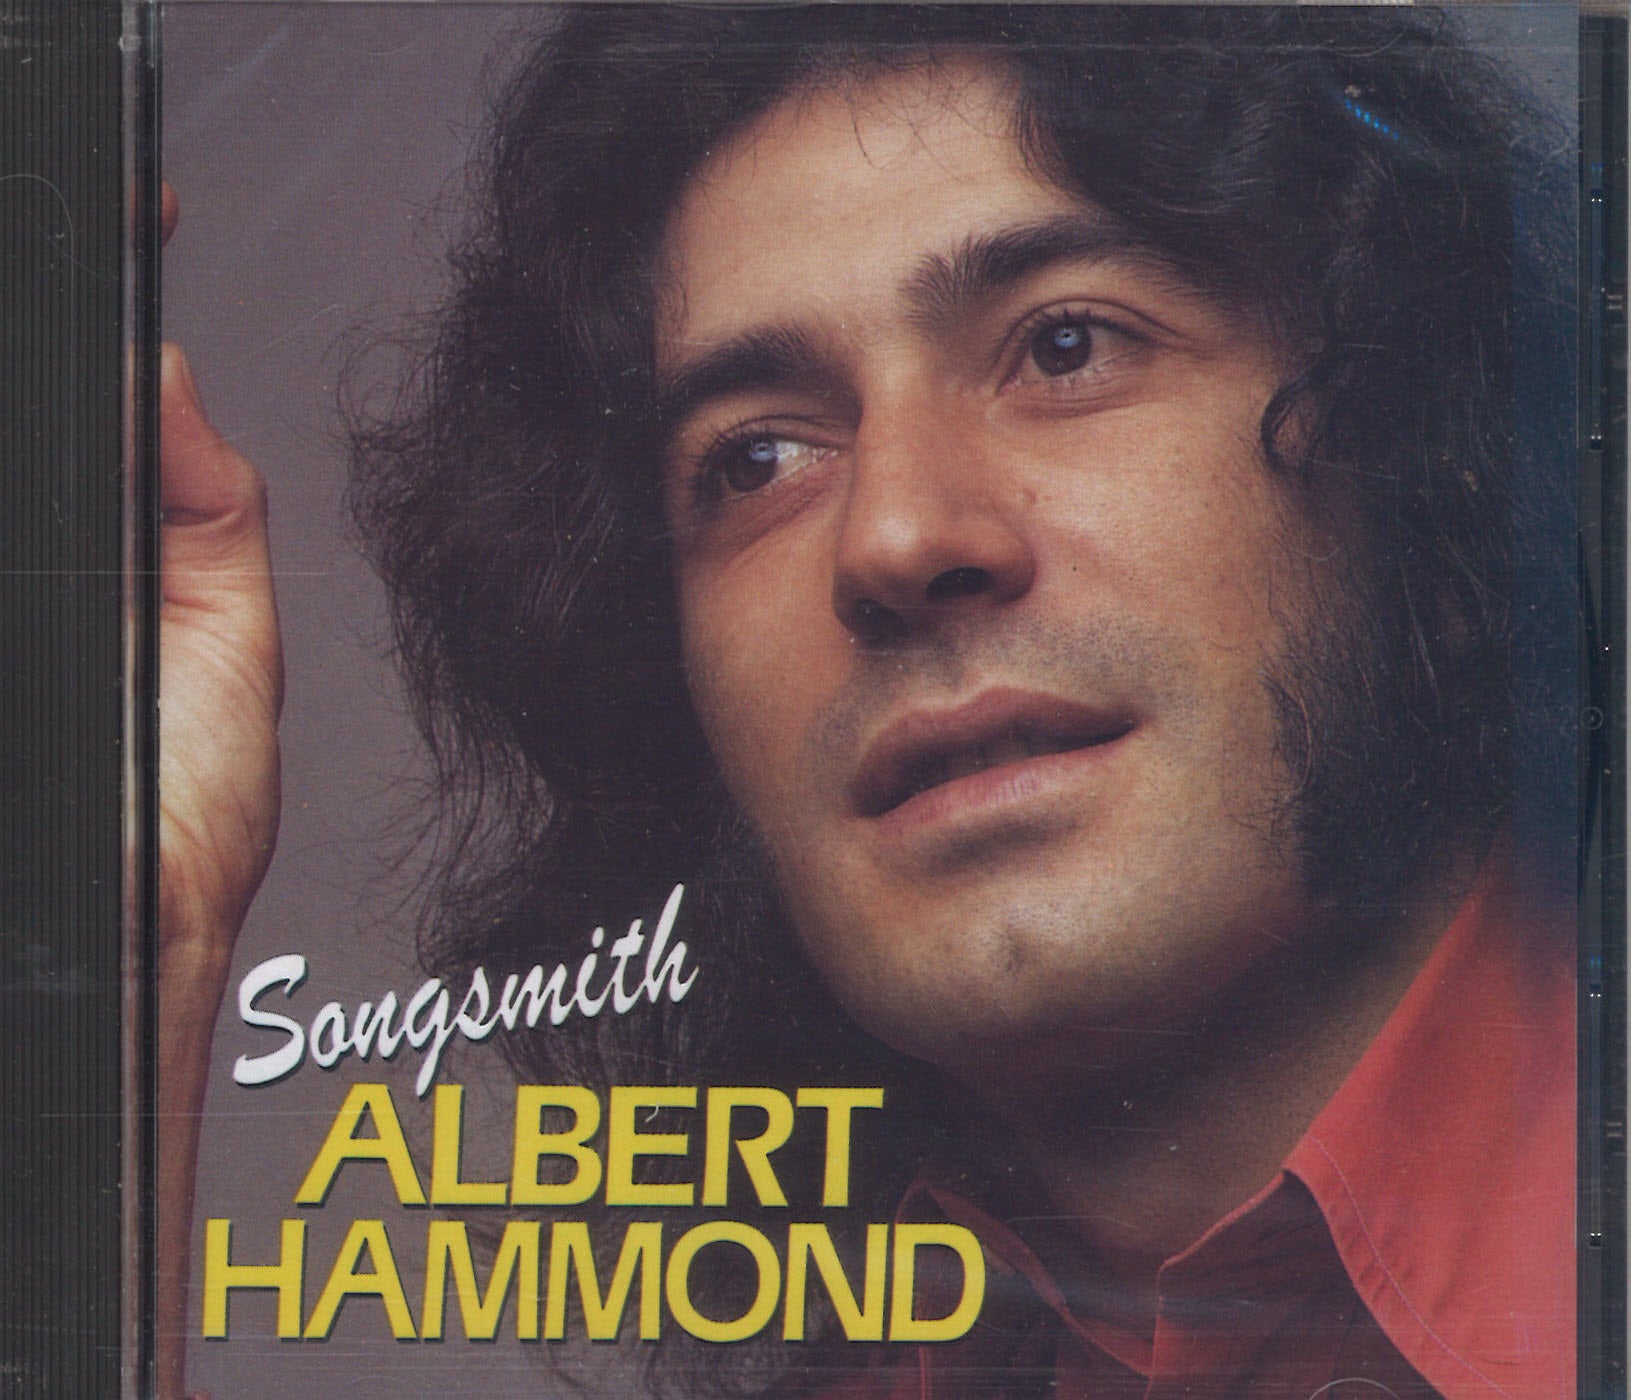 Albert Hammond Songsmith